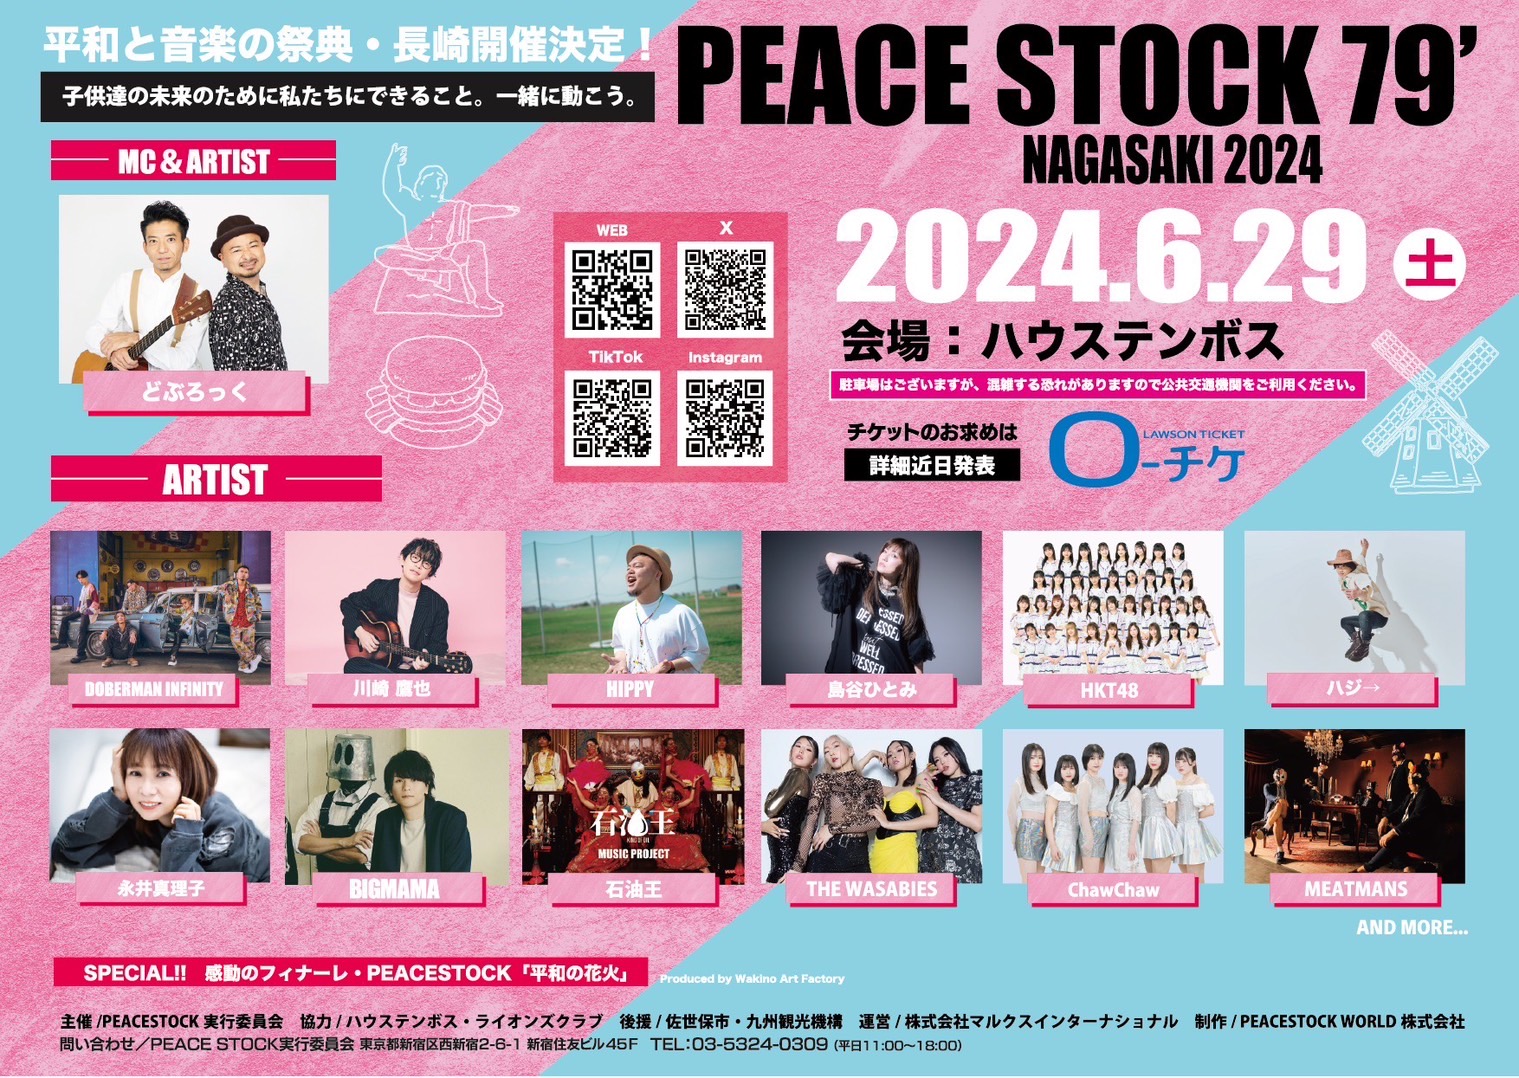 6/29(土)長崎にて開催される「PEACE STOCK 79' 」にDOBERMAN INFINITY出演決定！